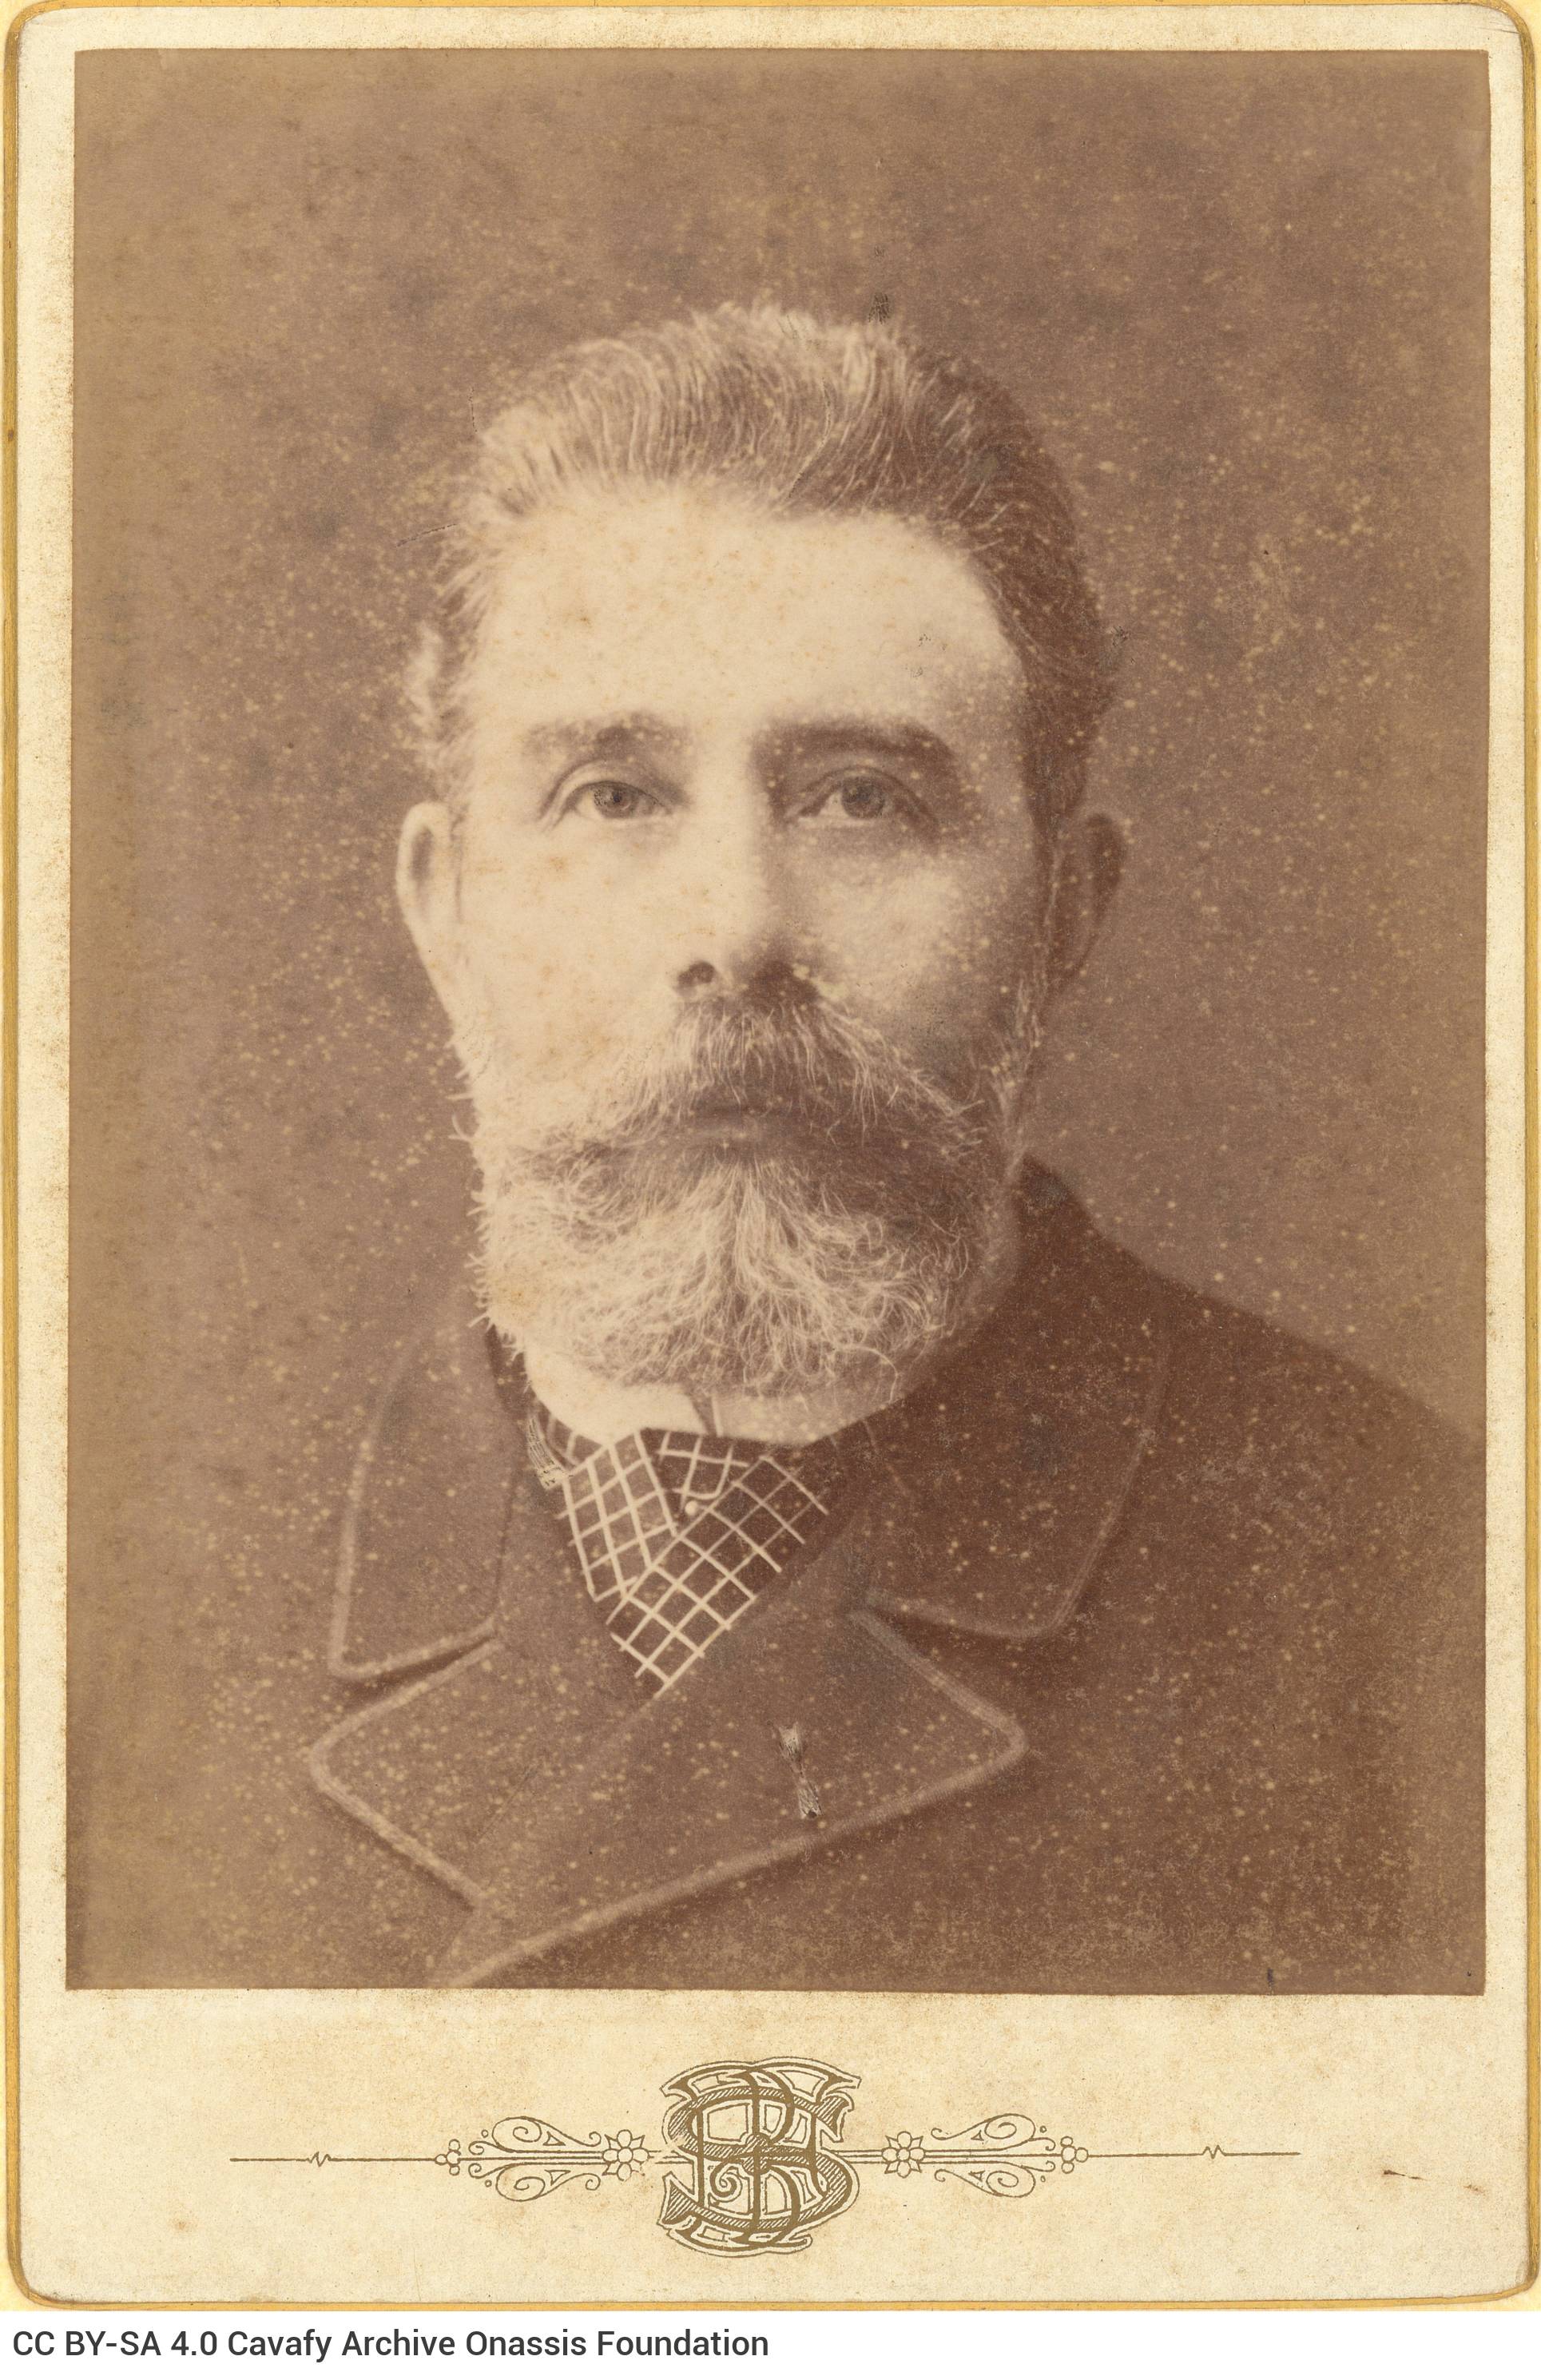 Φωτογραφικό πορτρέτο άνδρα με μουστάκι, γενειάδα και καρό γραβάτα. Ο